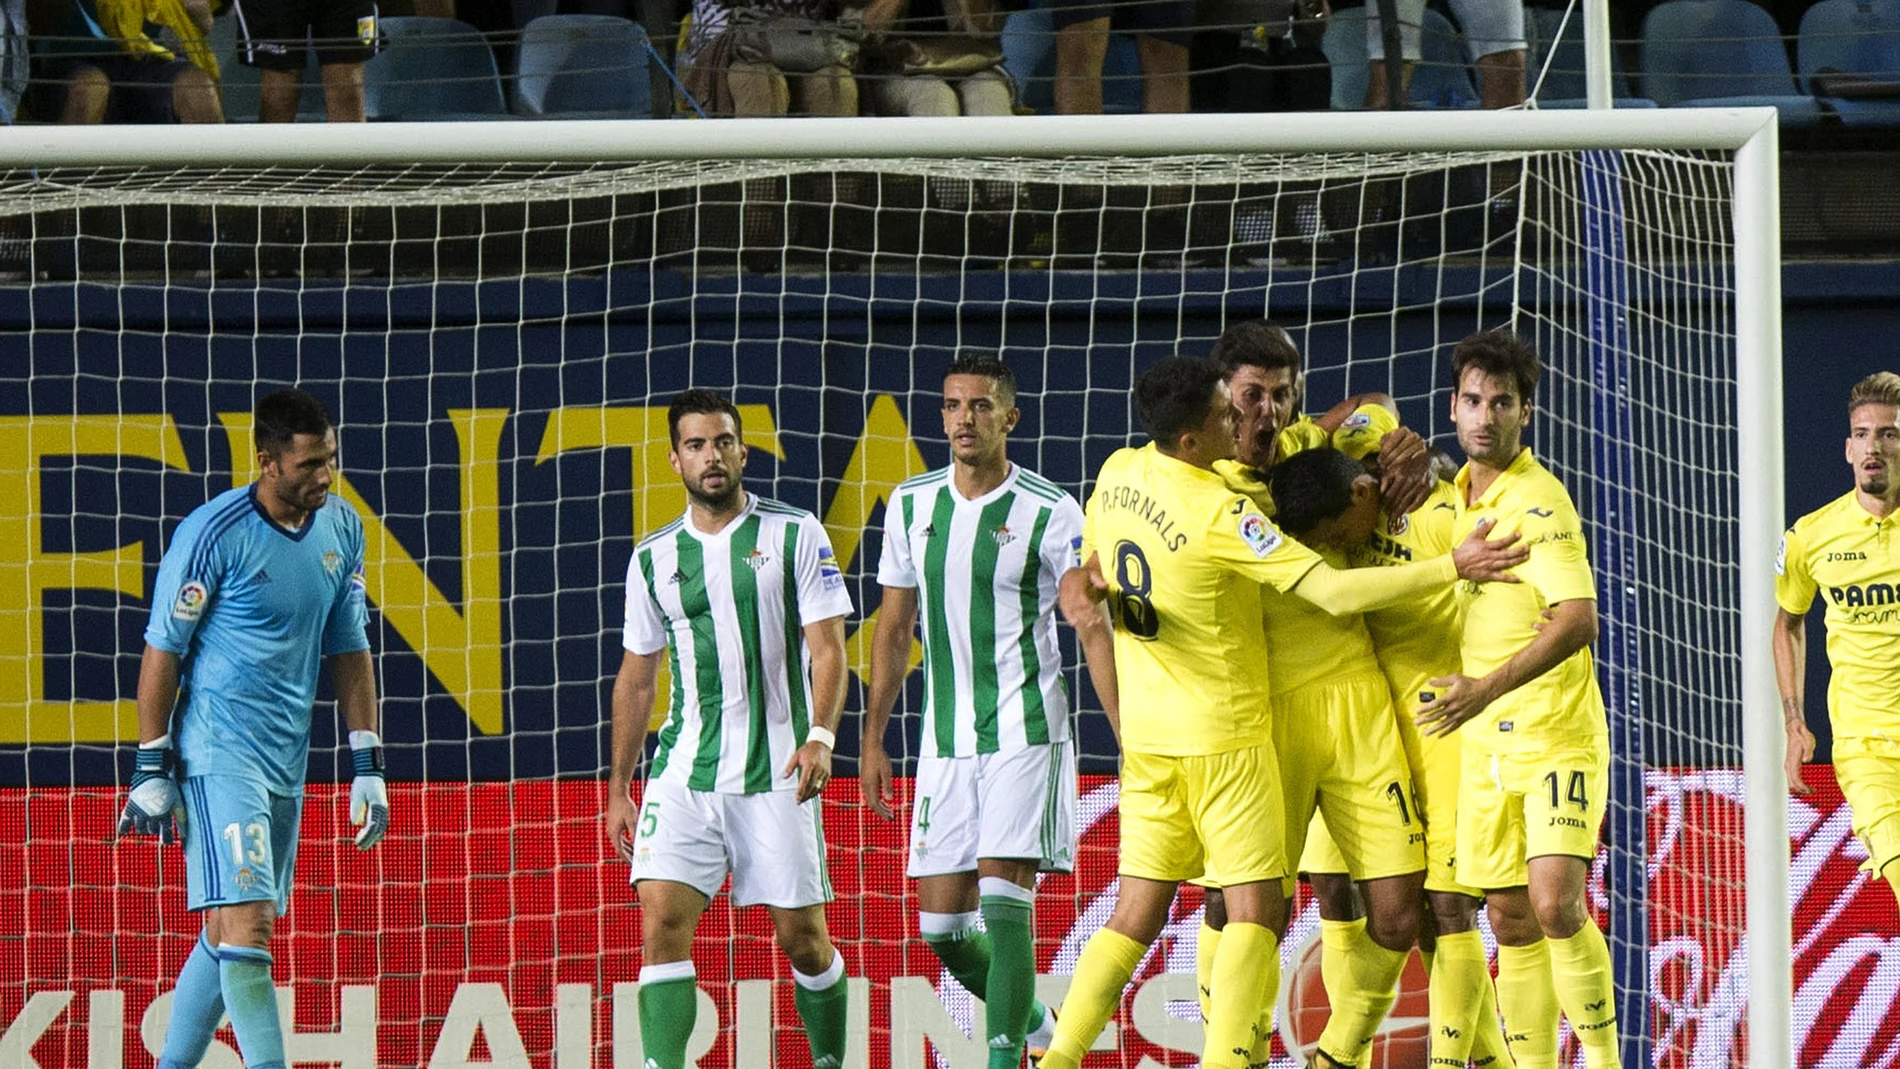 Los jugadores del Villarreal celebran el gol de Bacca contra el Betis